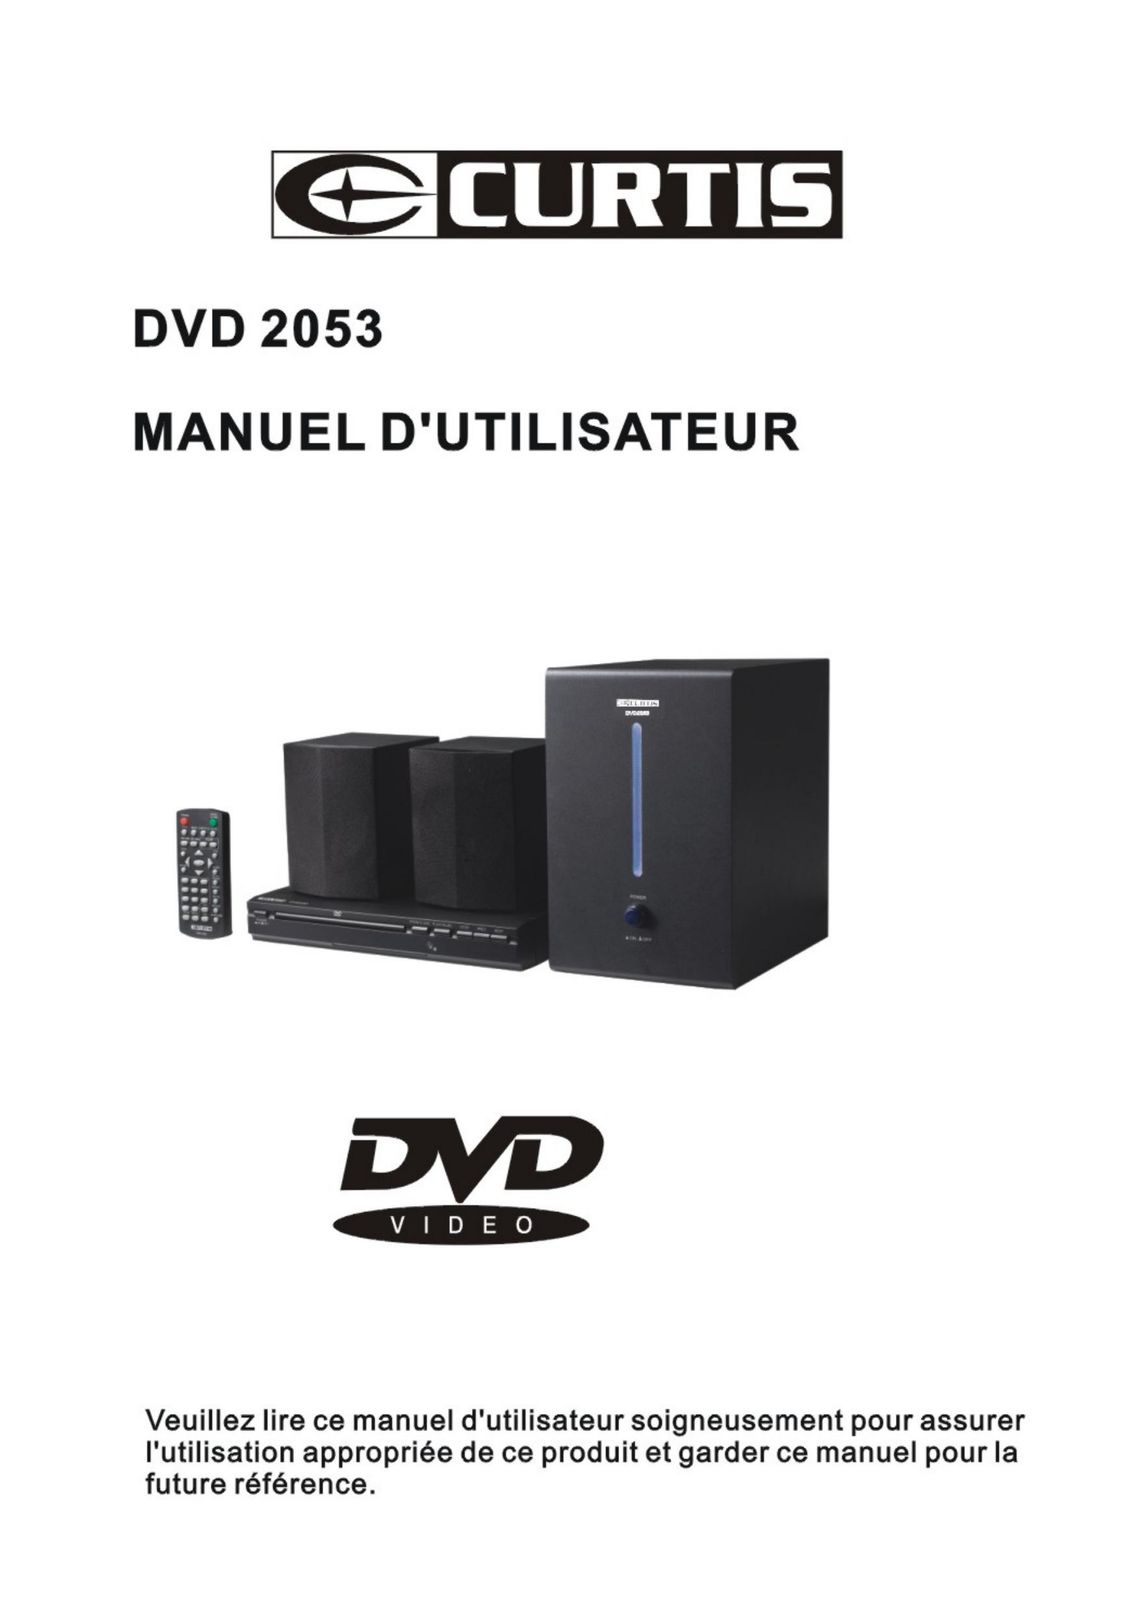 Curtis DVD2053 DVD Player User Manual